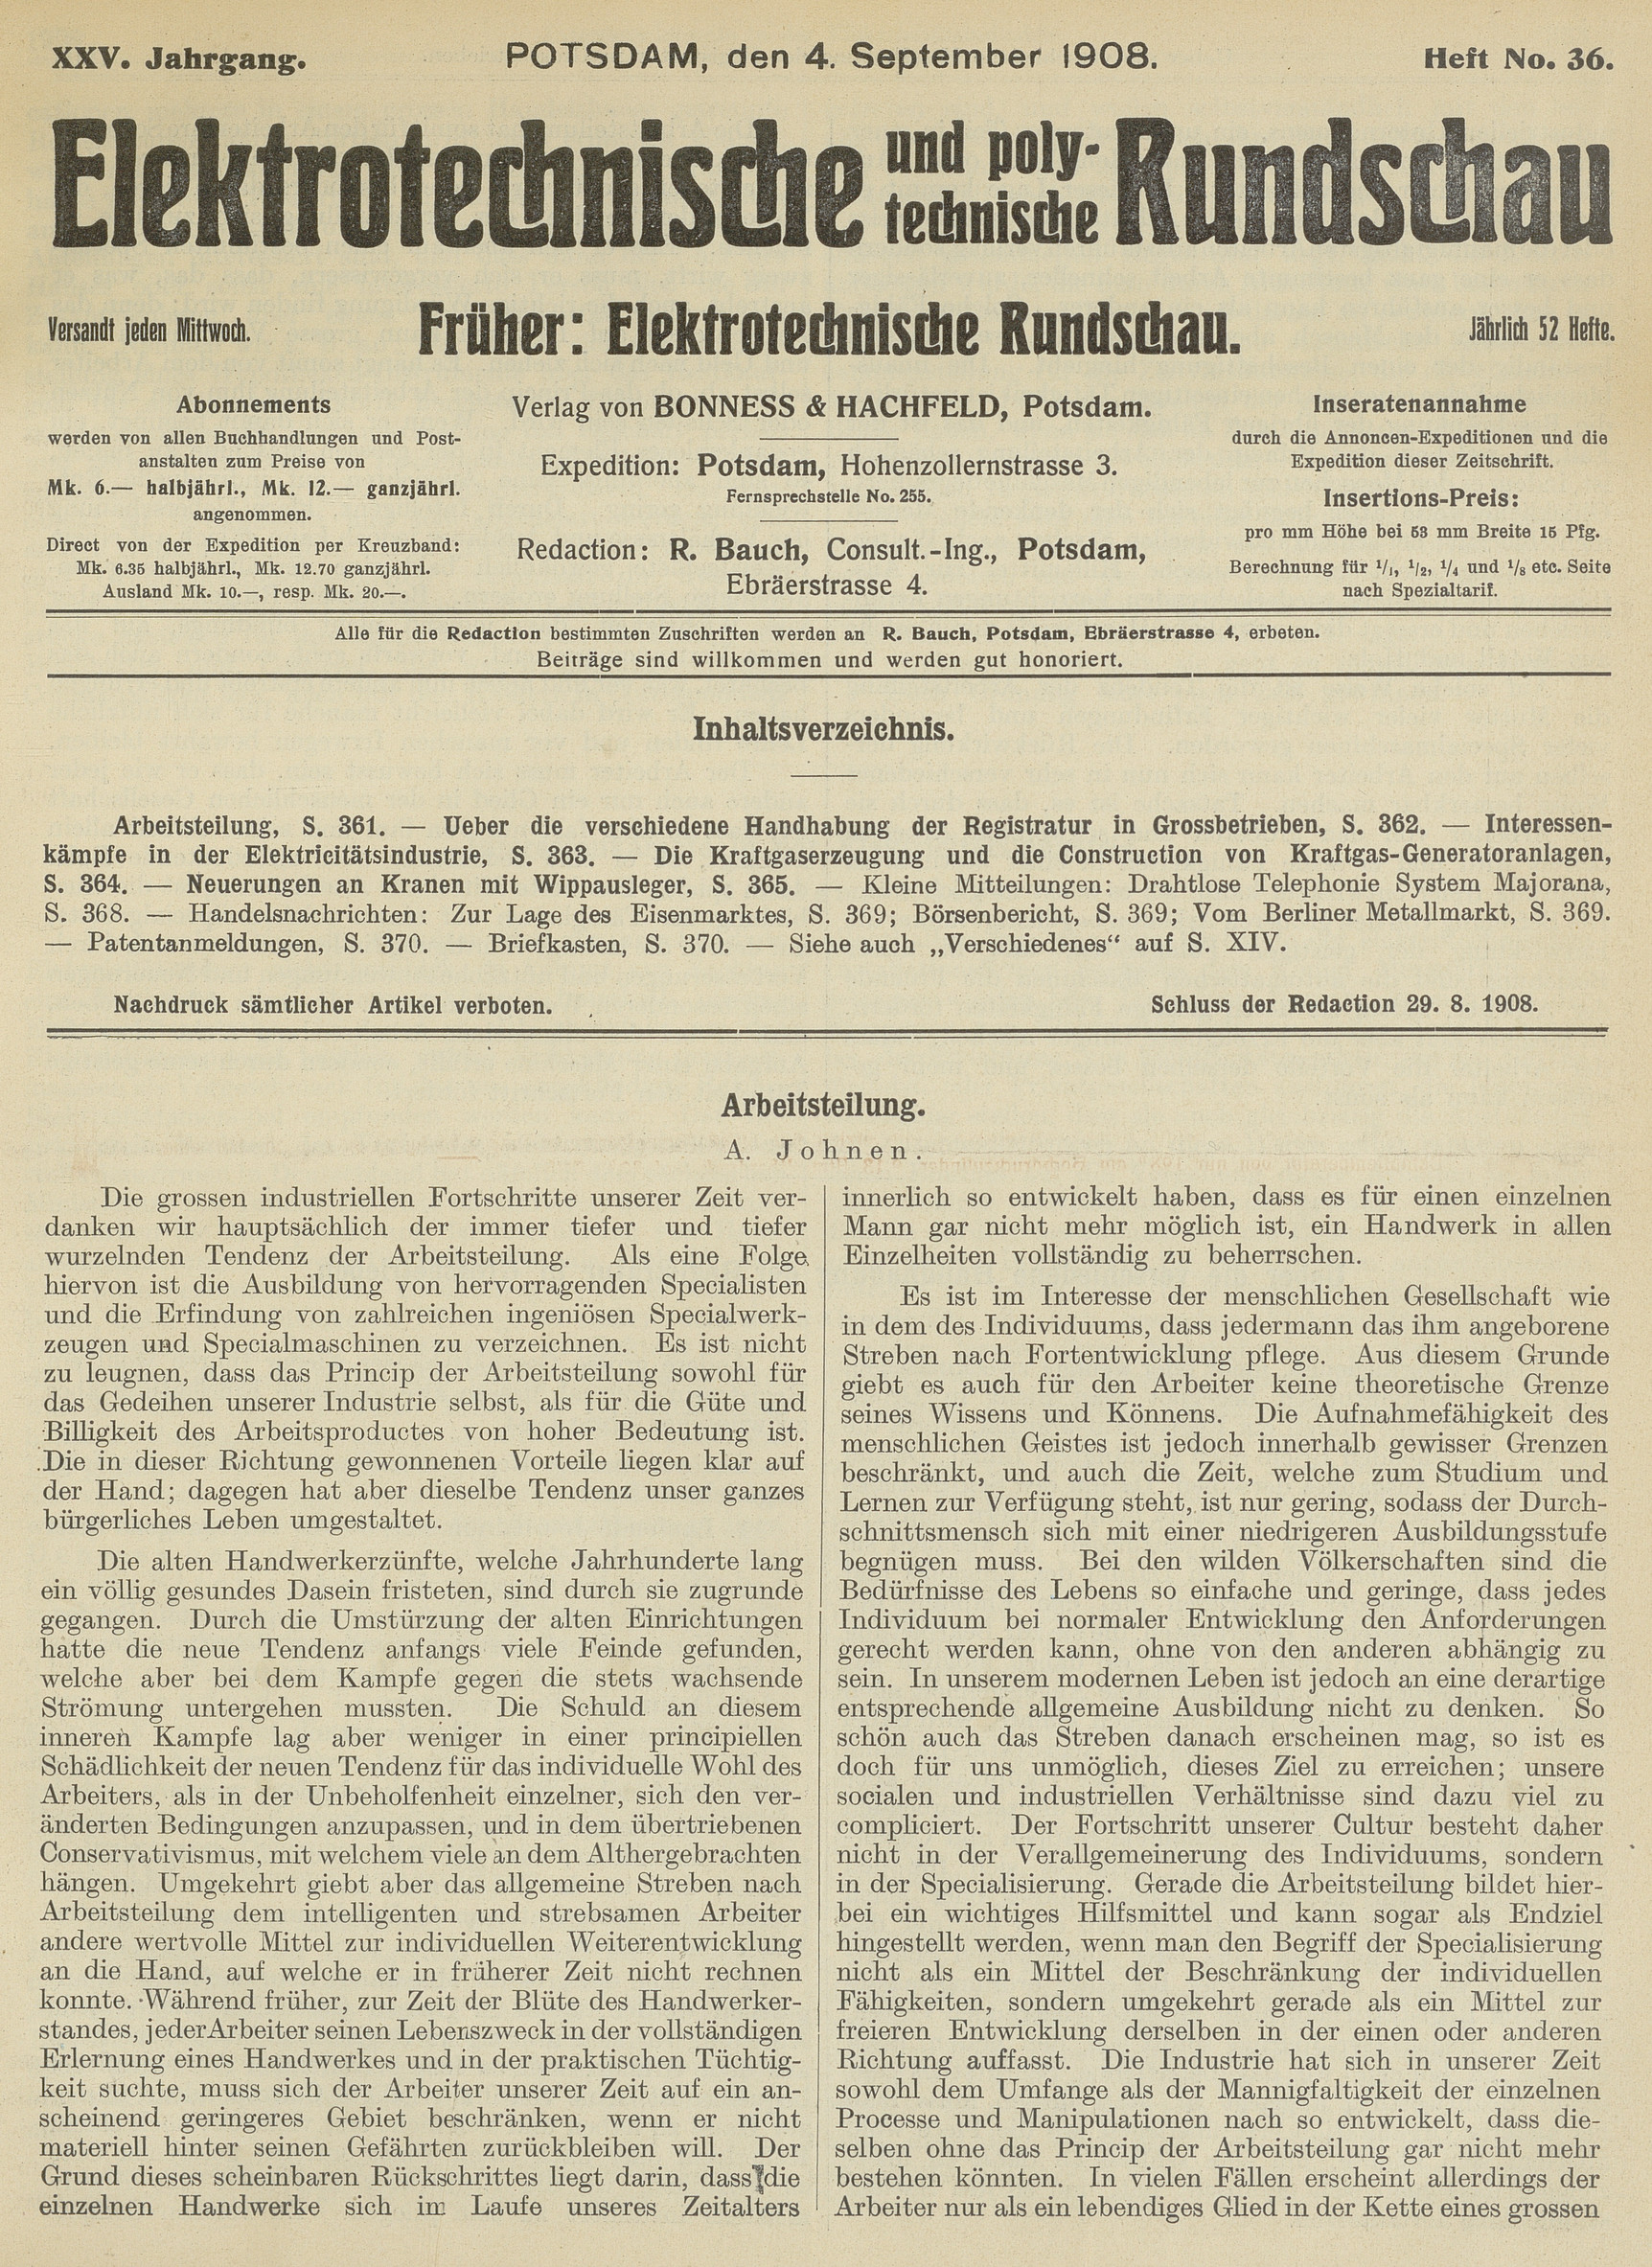 Elektrotechnische und polytechnische Rundschau, XXV. Jahrgang, Heft No. 36